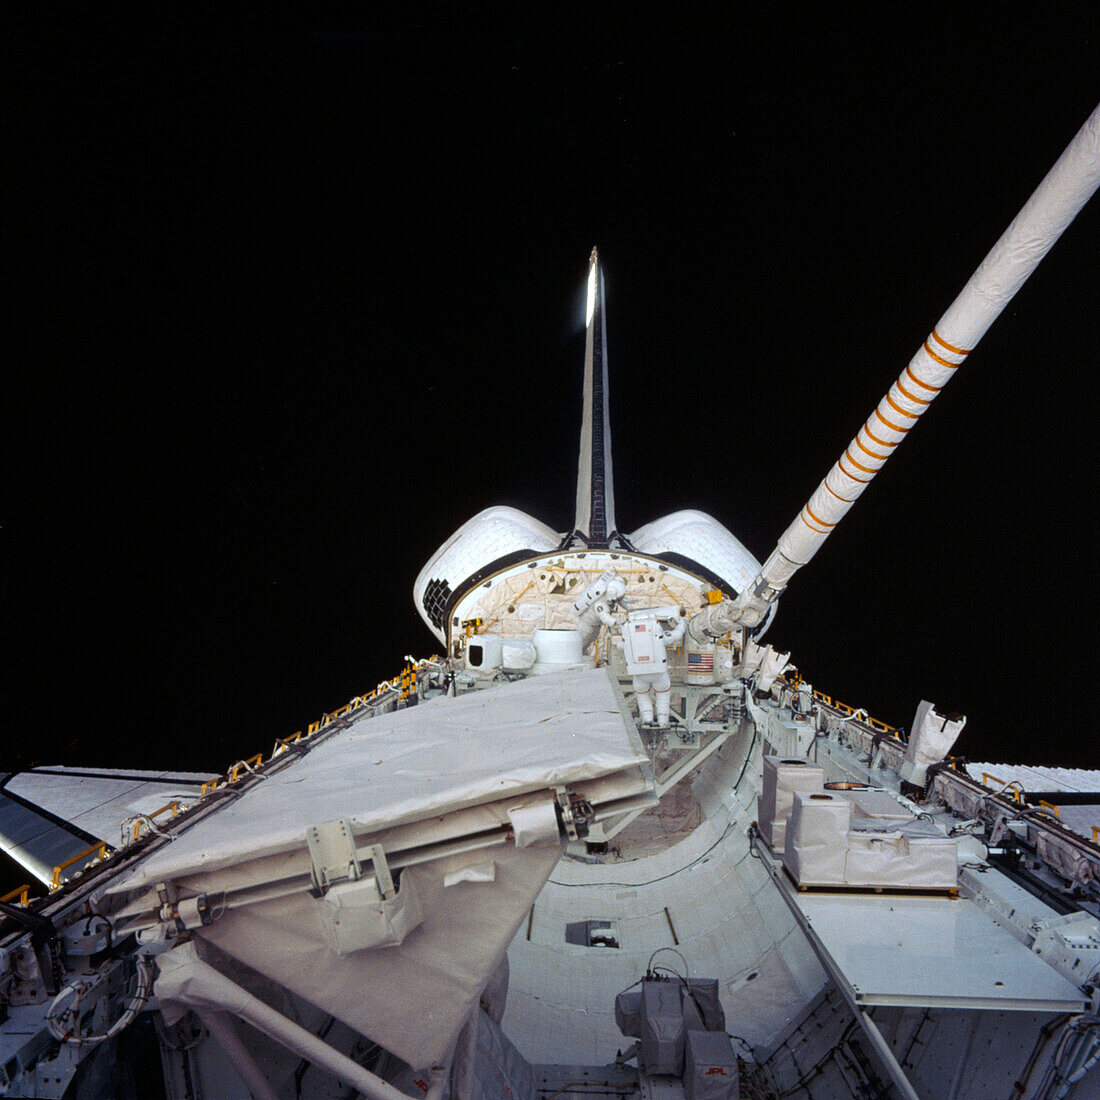 Space shuttle astronauts spacewalk